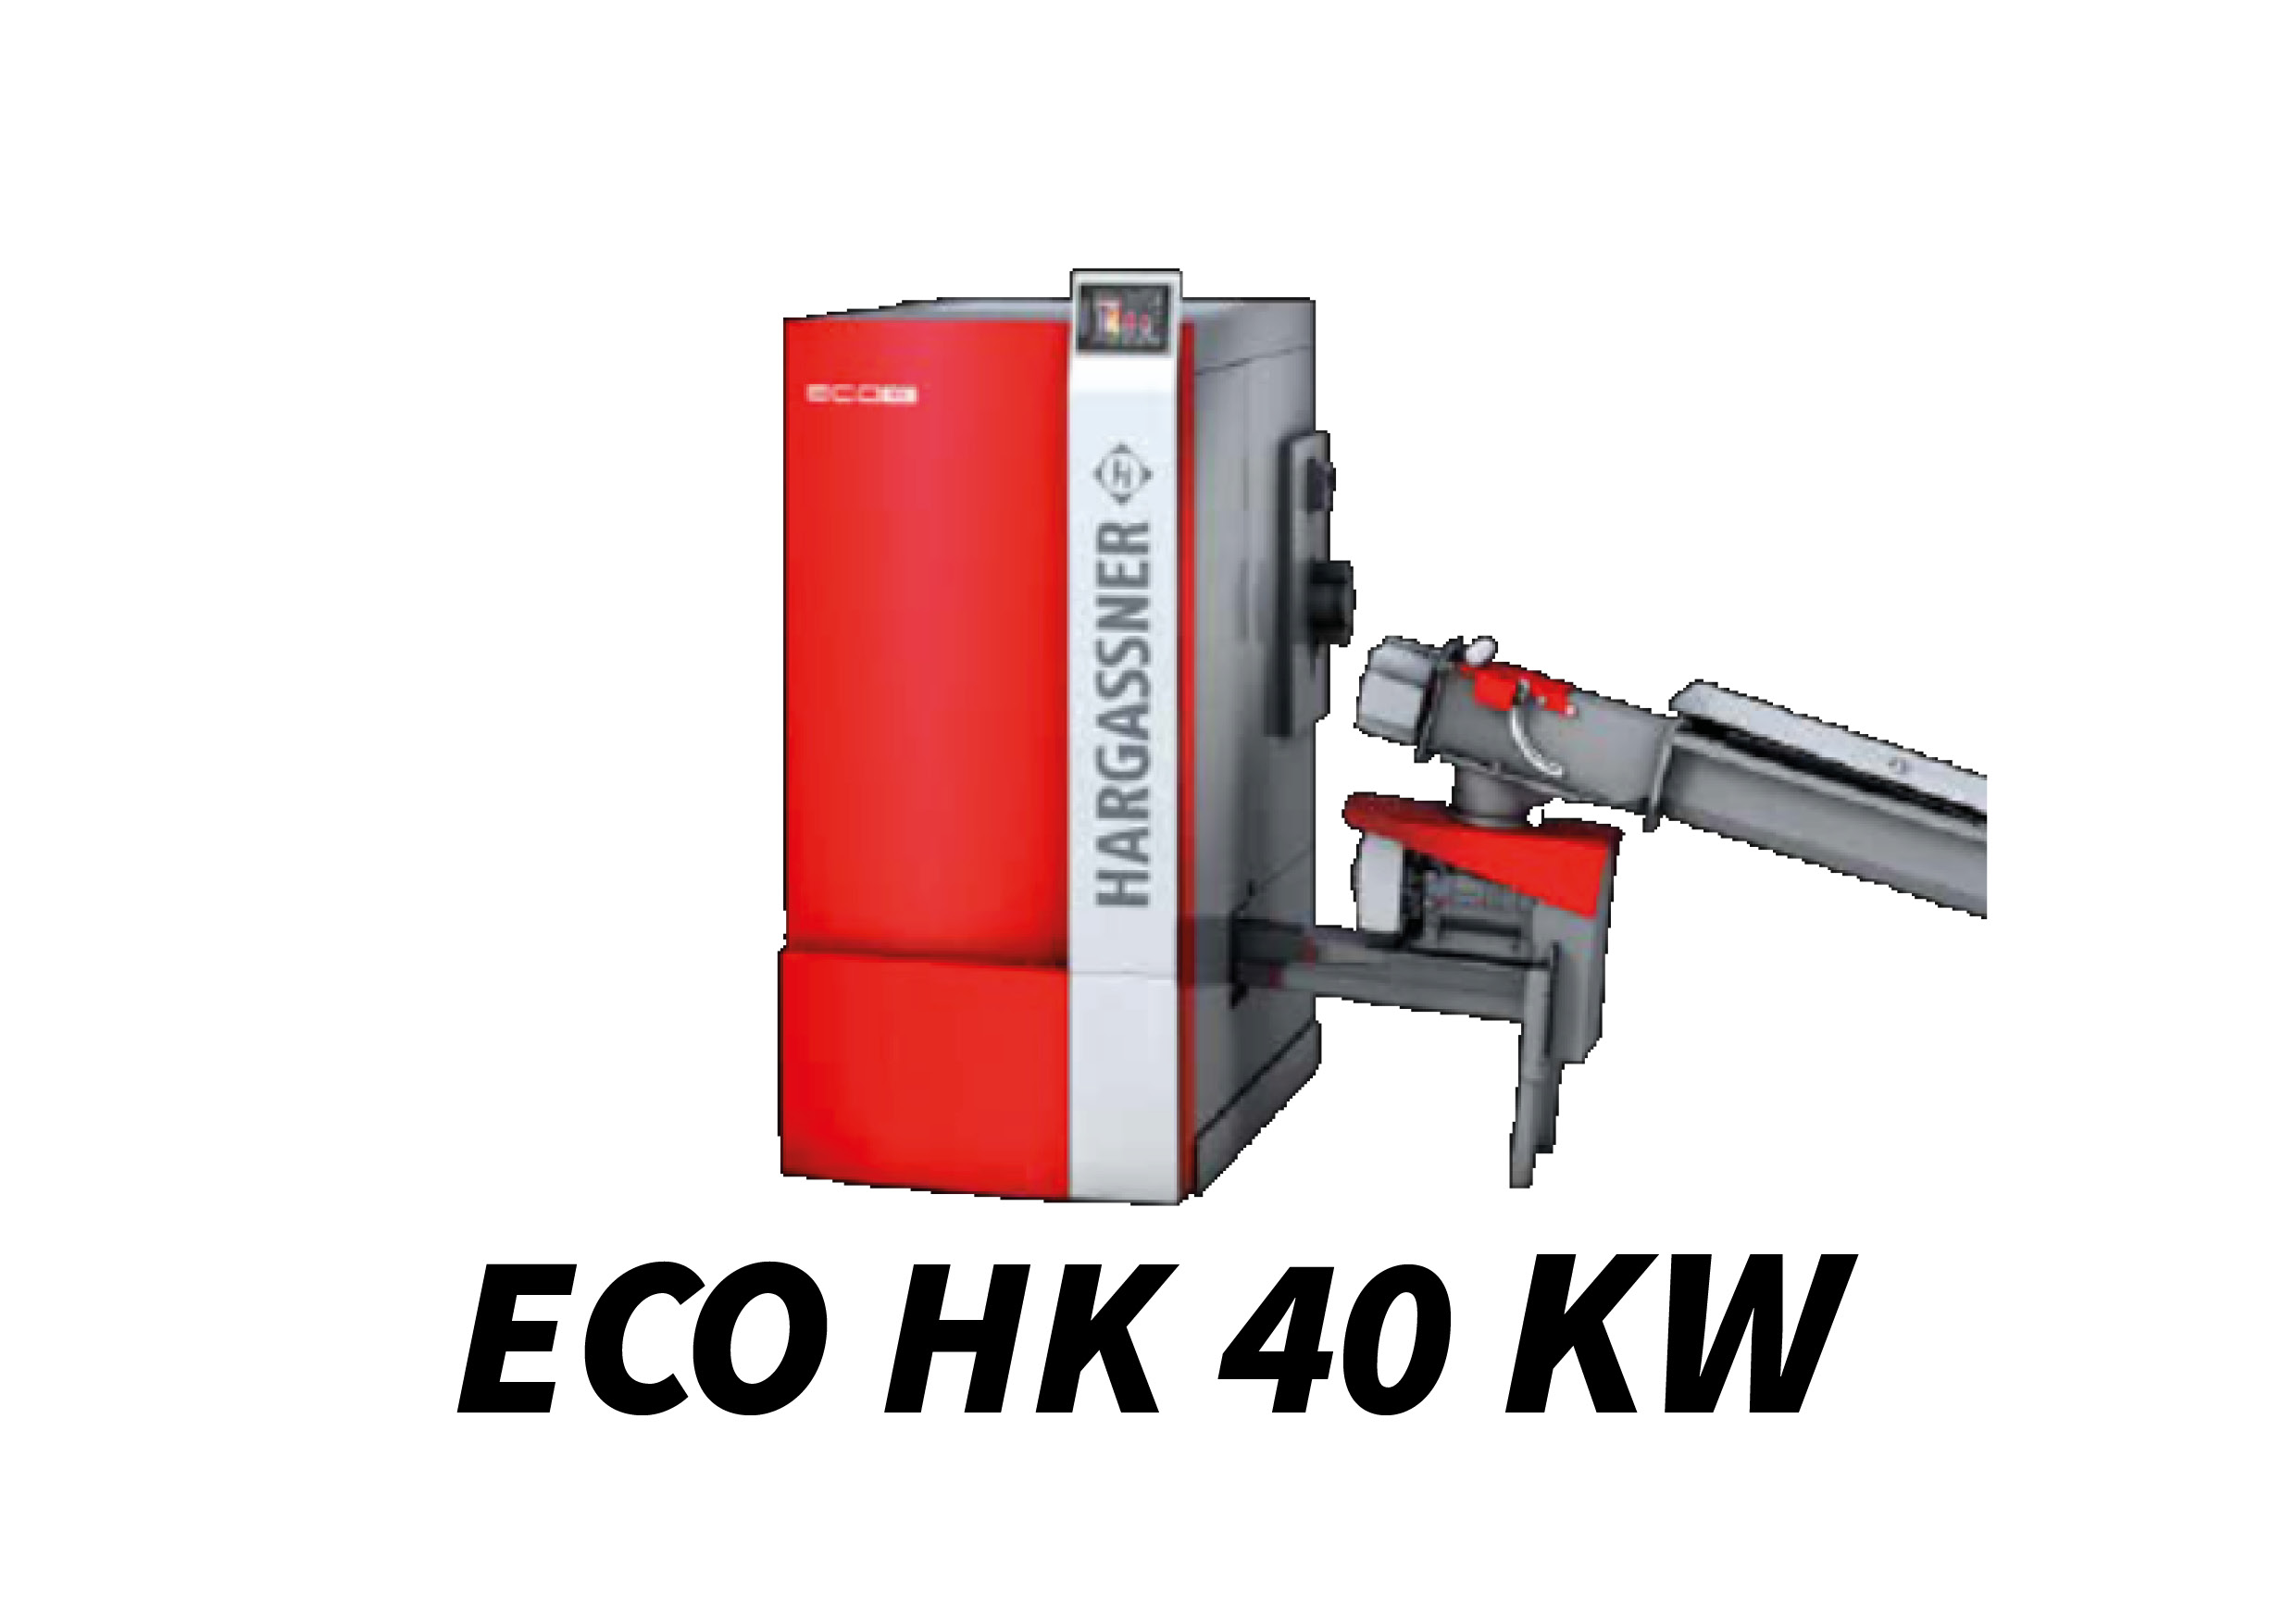 ECO HK 40 kW